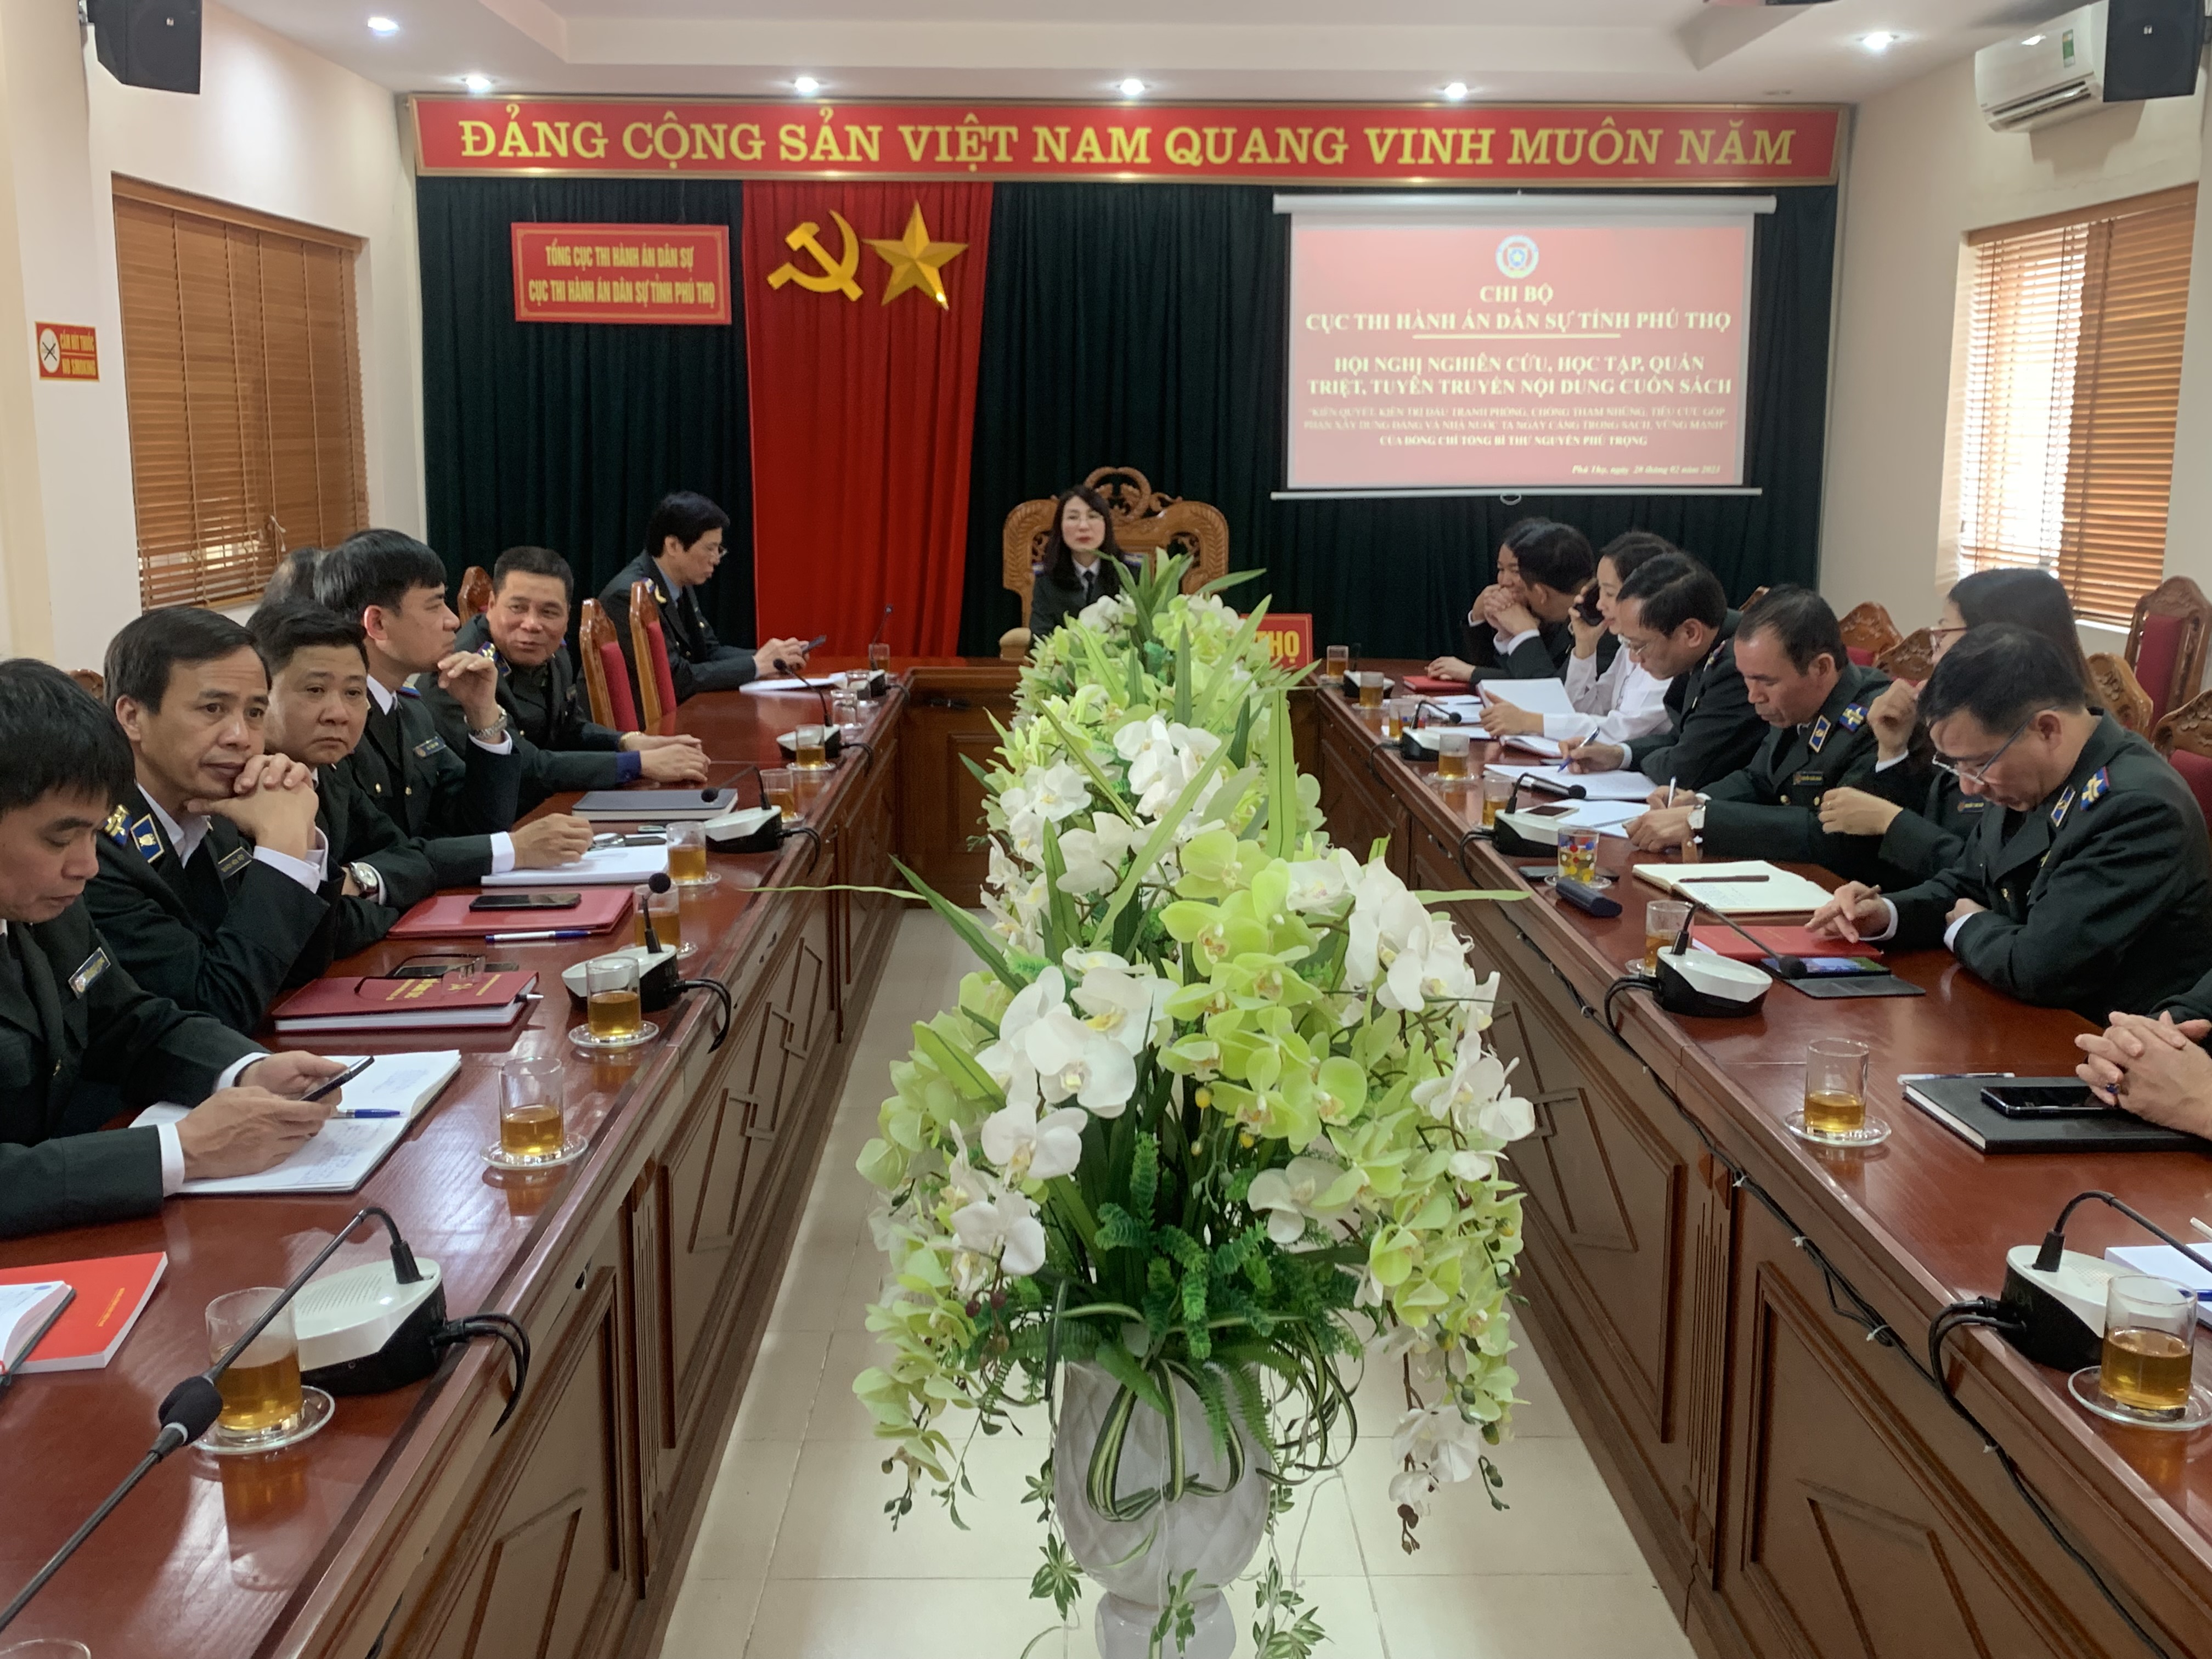 Cục THADS tỉnh Phú Thọ tham dự Hội nghị nghiên cứu, học tập, quán triệt, tuyên truyền nội dung Cuốn sách 